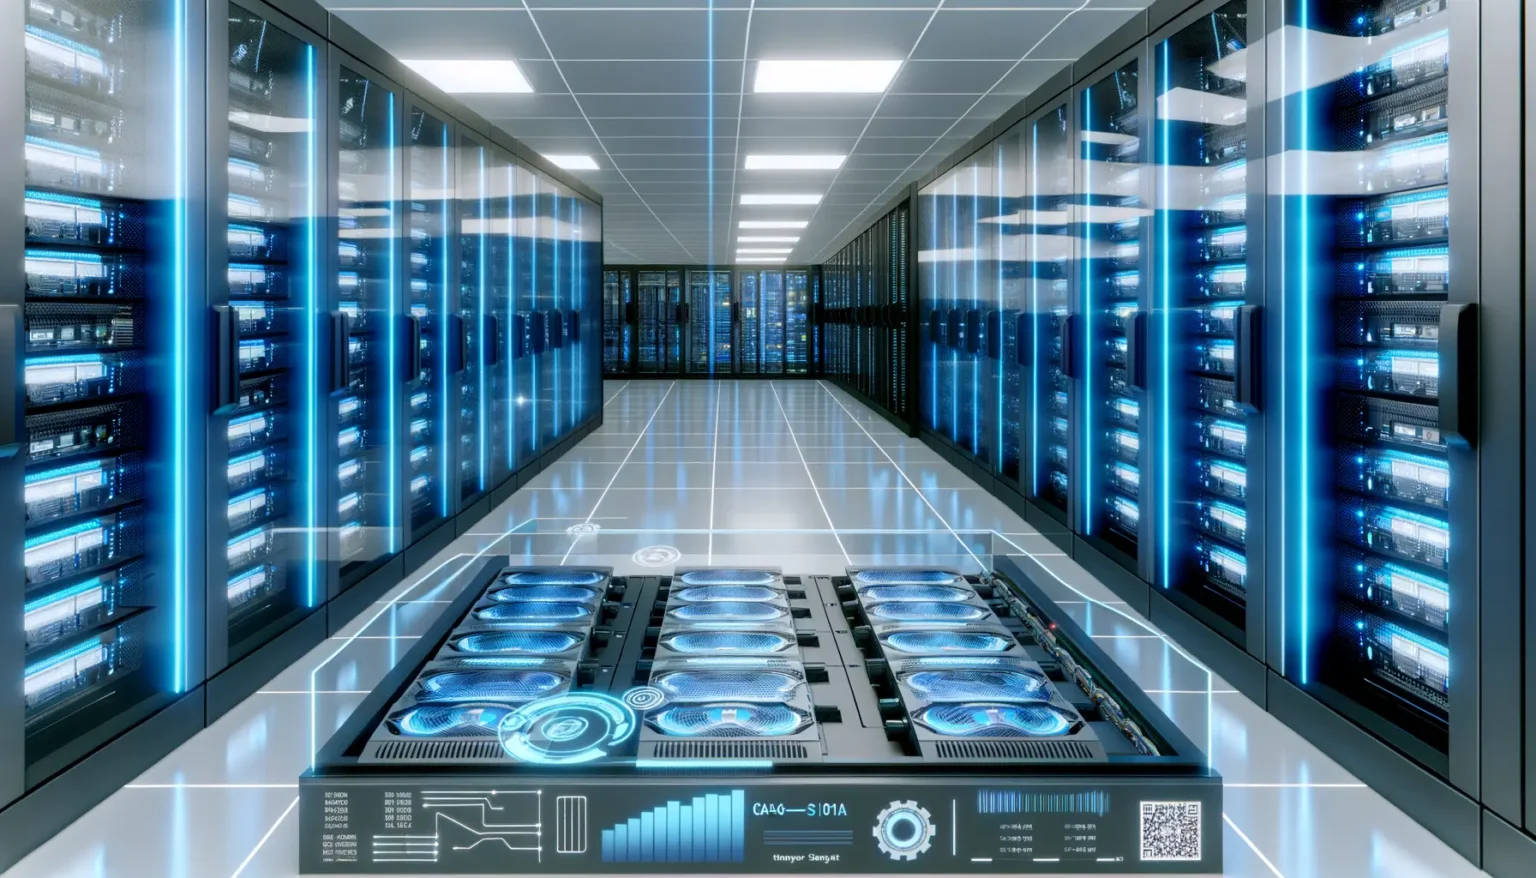 Moderne Serverräume mit Reihen von Server-Schränken, die blaues Licht ausstrahlen, im Vordergrund Detailansichten von Datenservern und grafischen Anzeigen zu Leistung und Systemstatus.